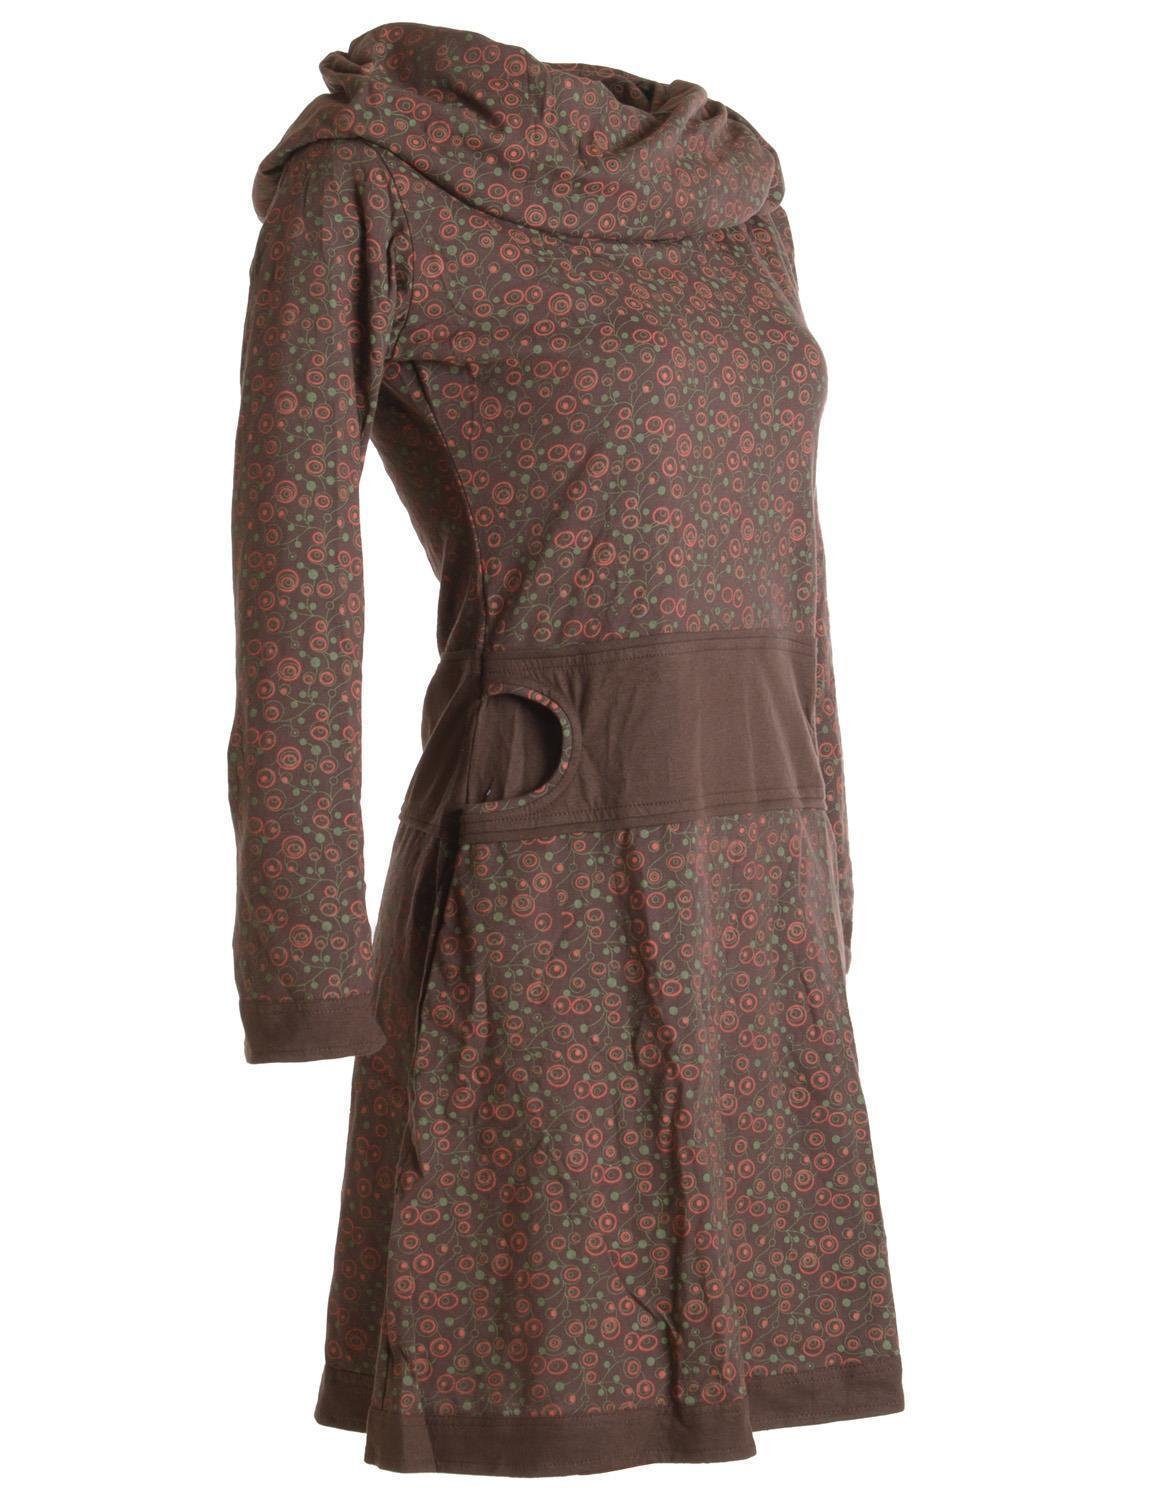 Vishes Jerseykleid Bedrucktes Kleid dunkelbraun Style Schalkragen aus Boho, mit Baumwolle Goa, Hippie Ethno